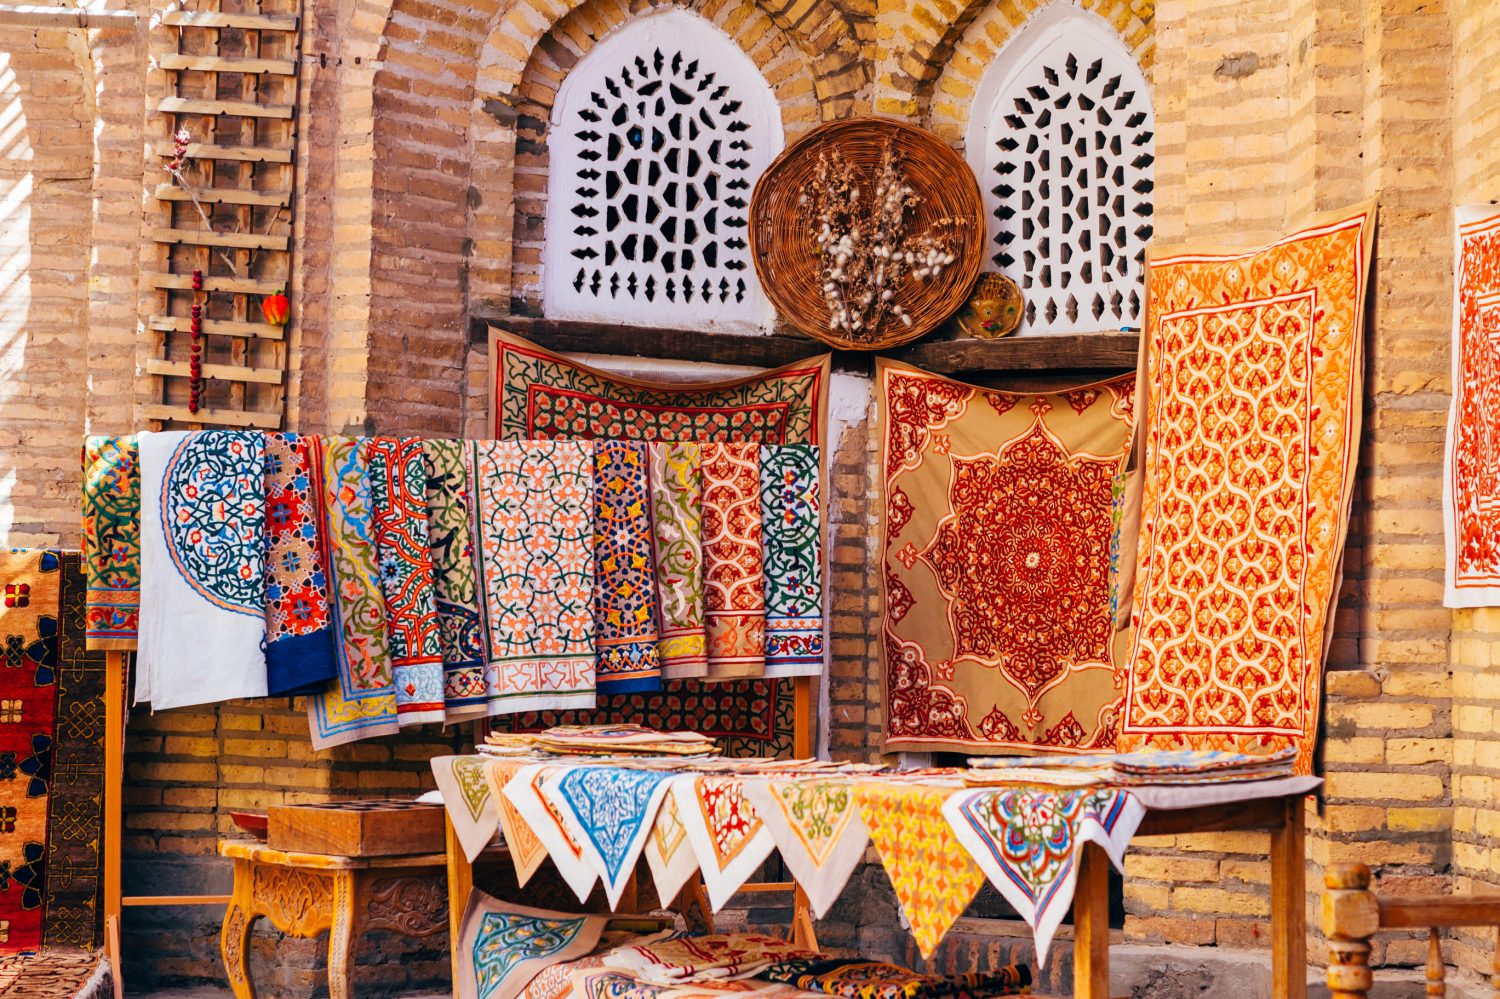 La vasta gamma di tappeti fatti a mano, tradizionali tappeti di seta uzbeki annodati, tovaglie ricamate e biancheria da letto nel piccolo bazar, Khiva, Uzbekistan, Asia centrale